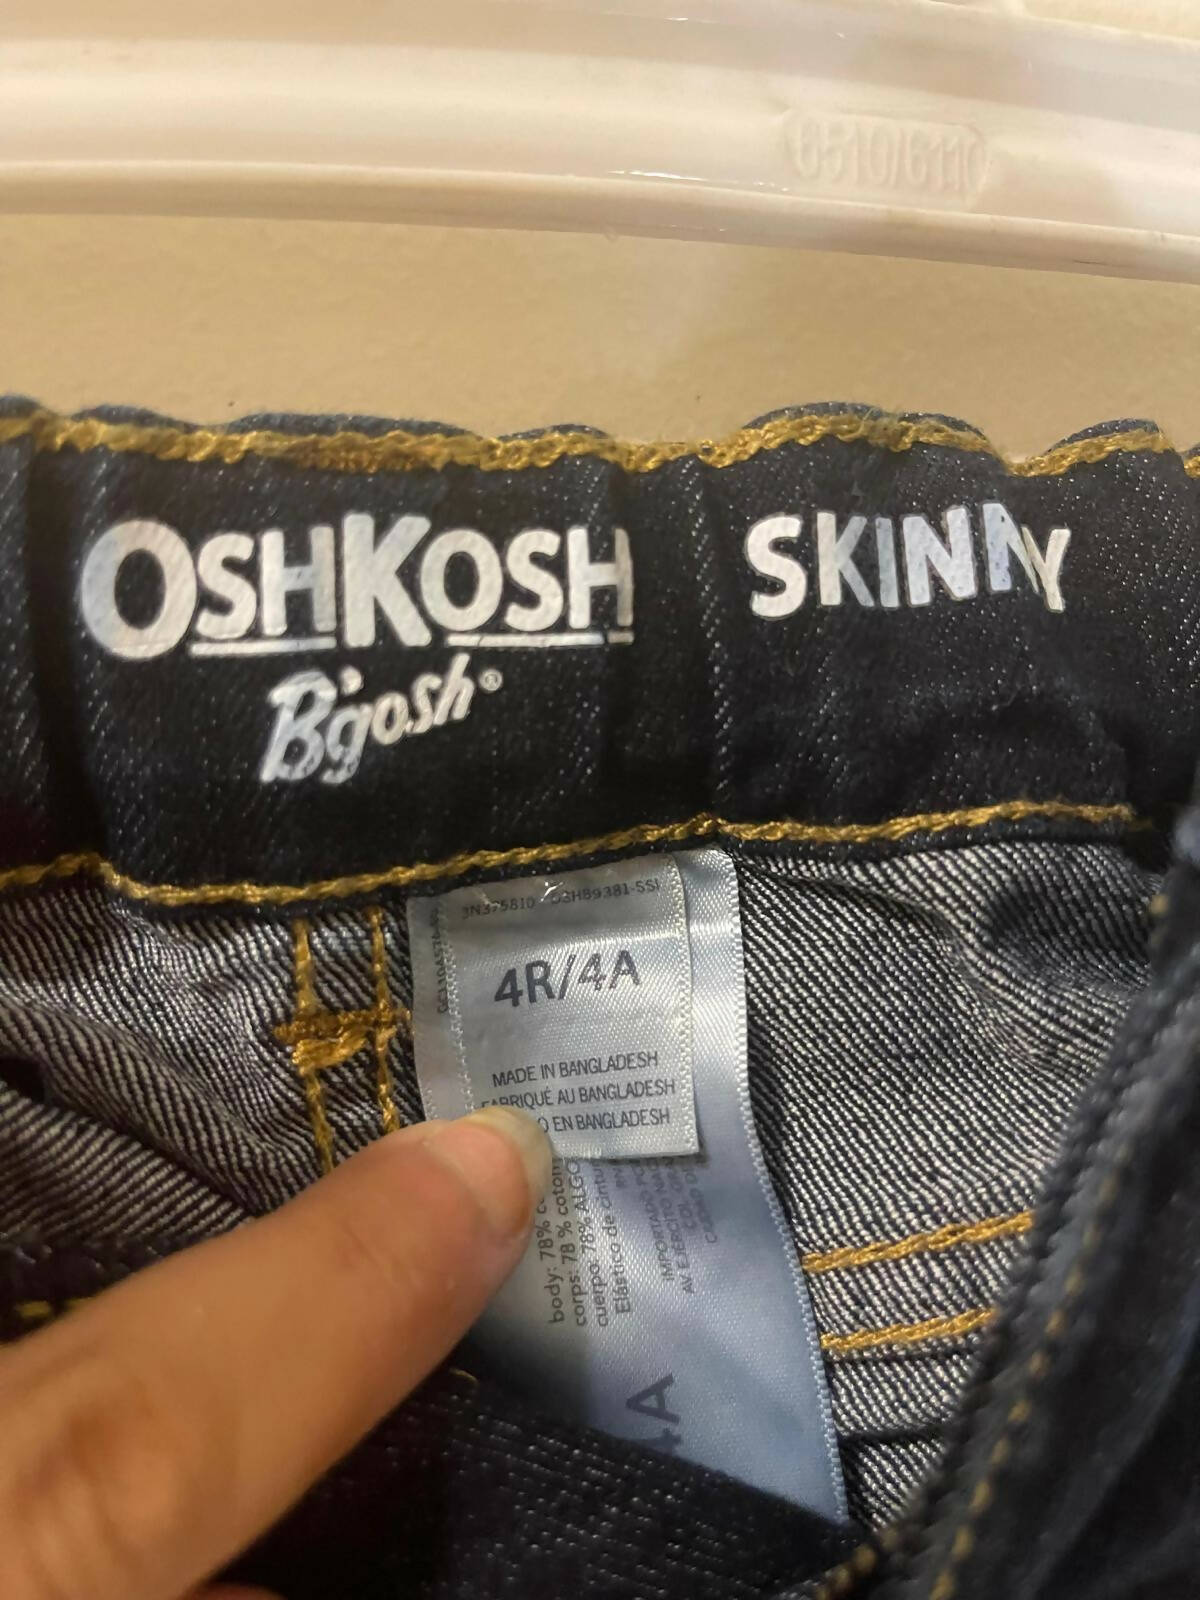 OshKosh | Jeans 4R/4A | Girls Bottoms & Pants | Preloved